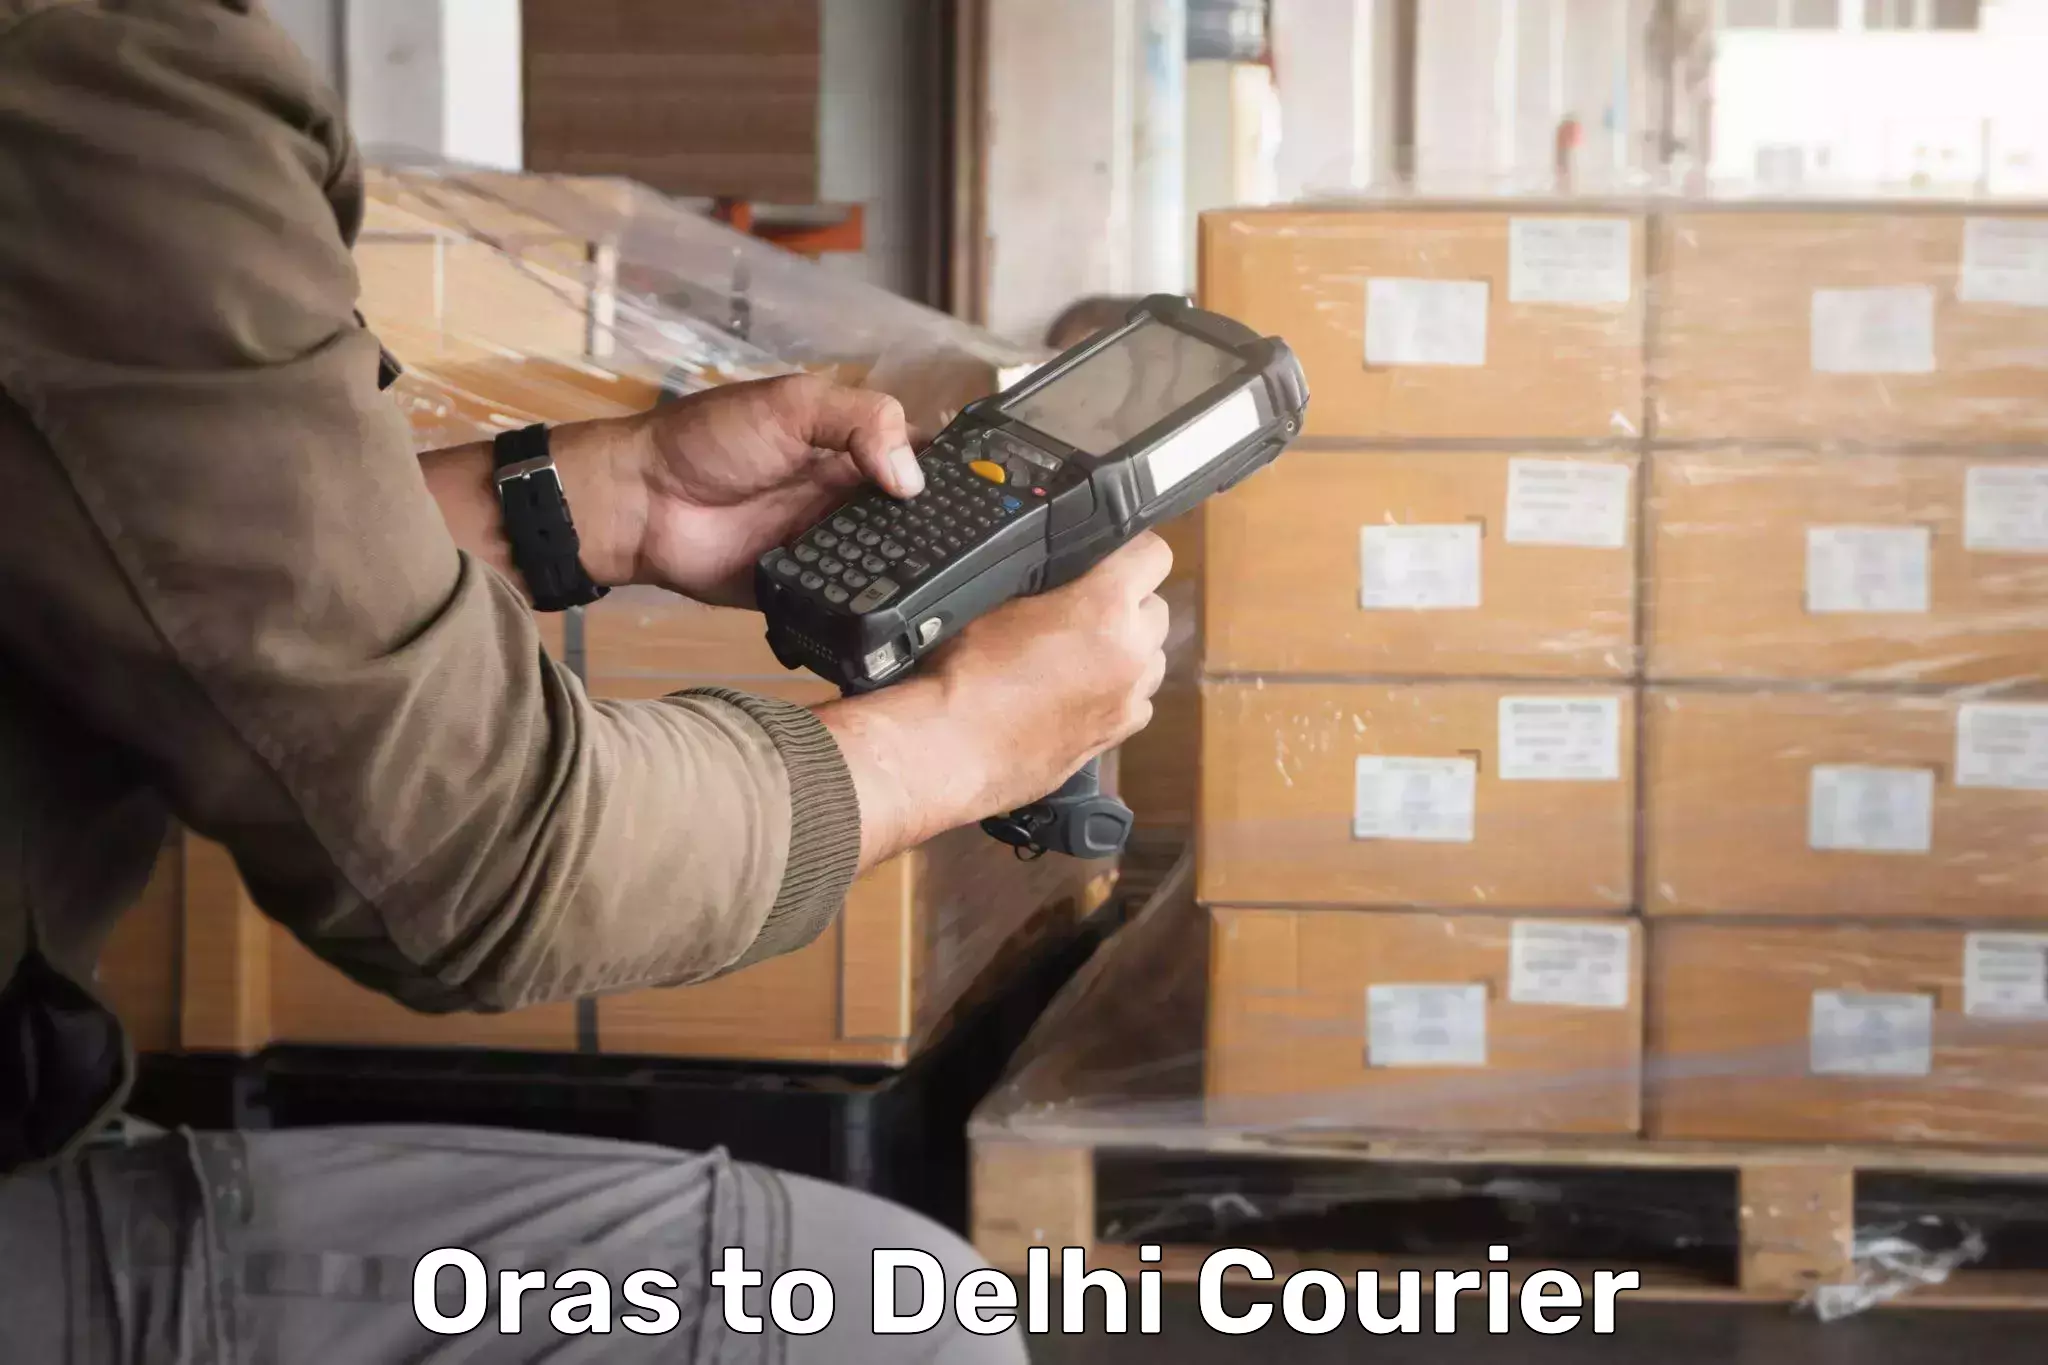 Efficient parcel service Oras to Ashok Vihar